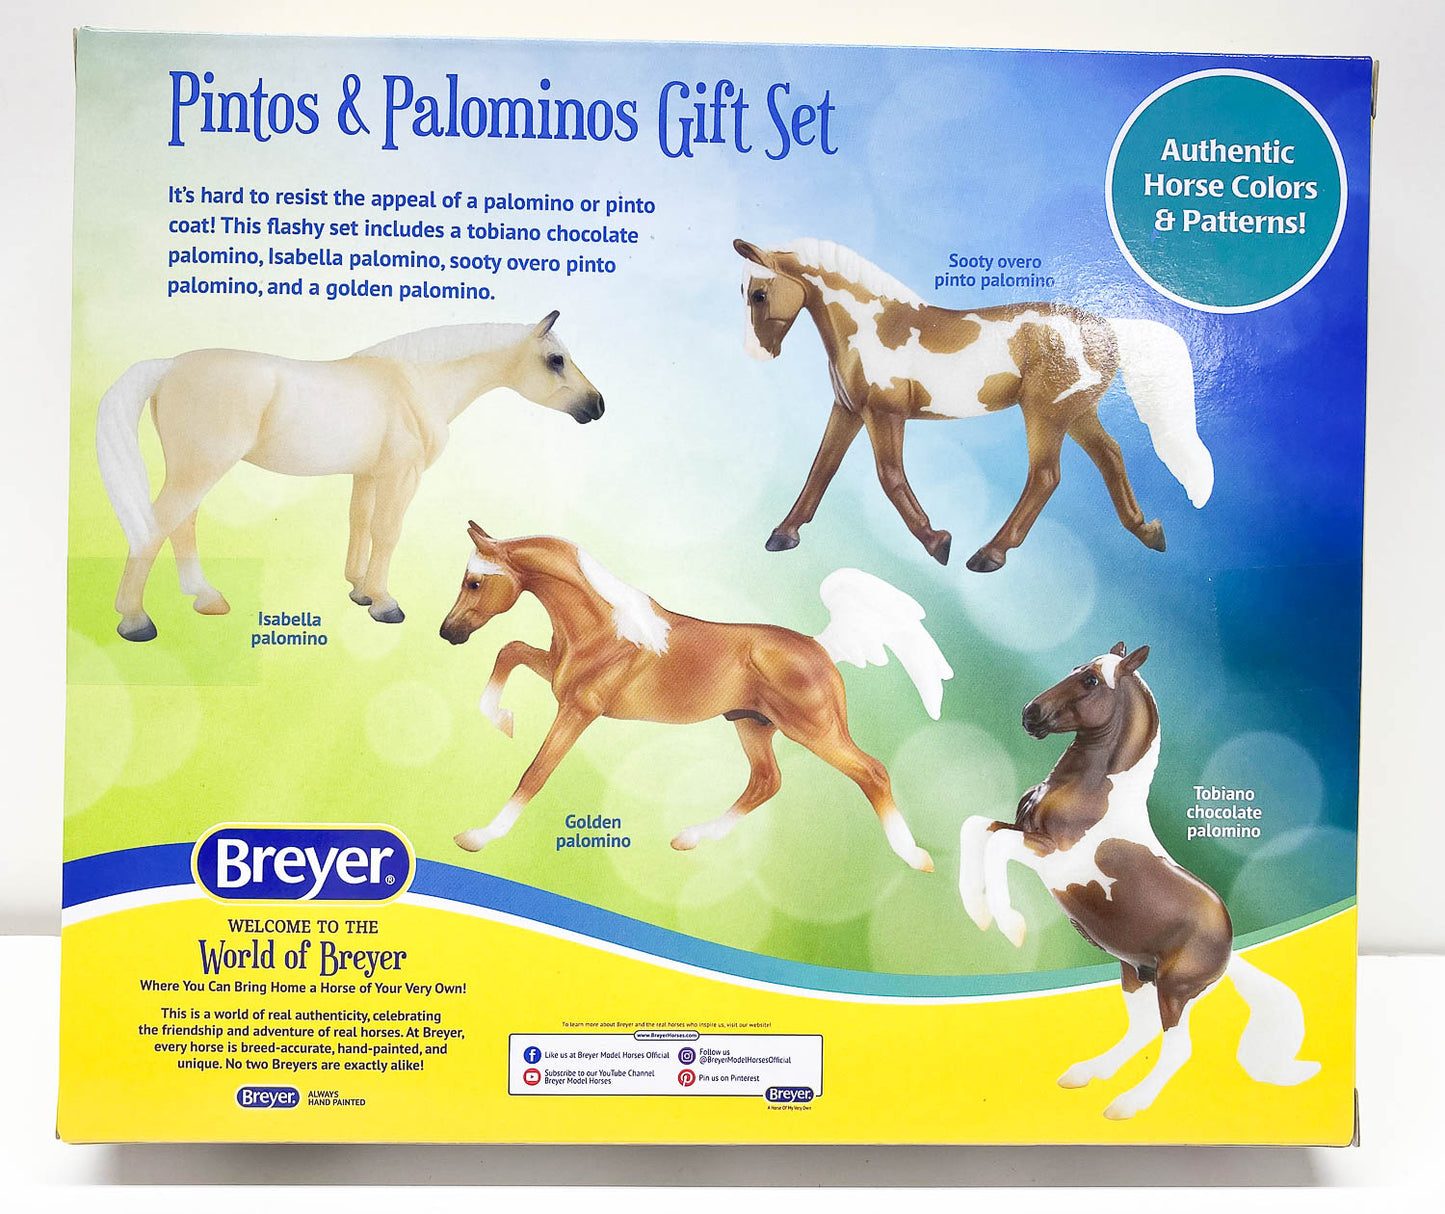 Pintos & Palominos Gift Set